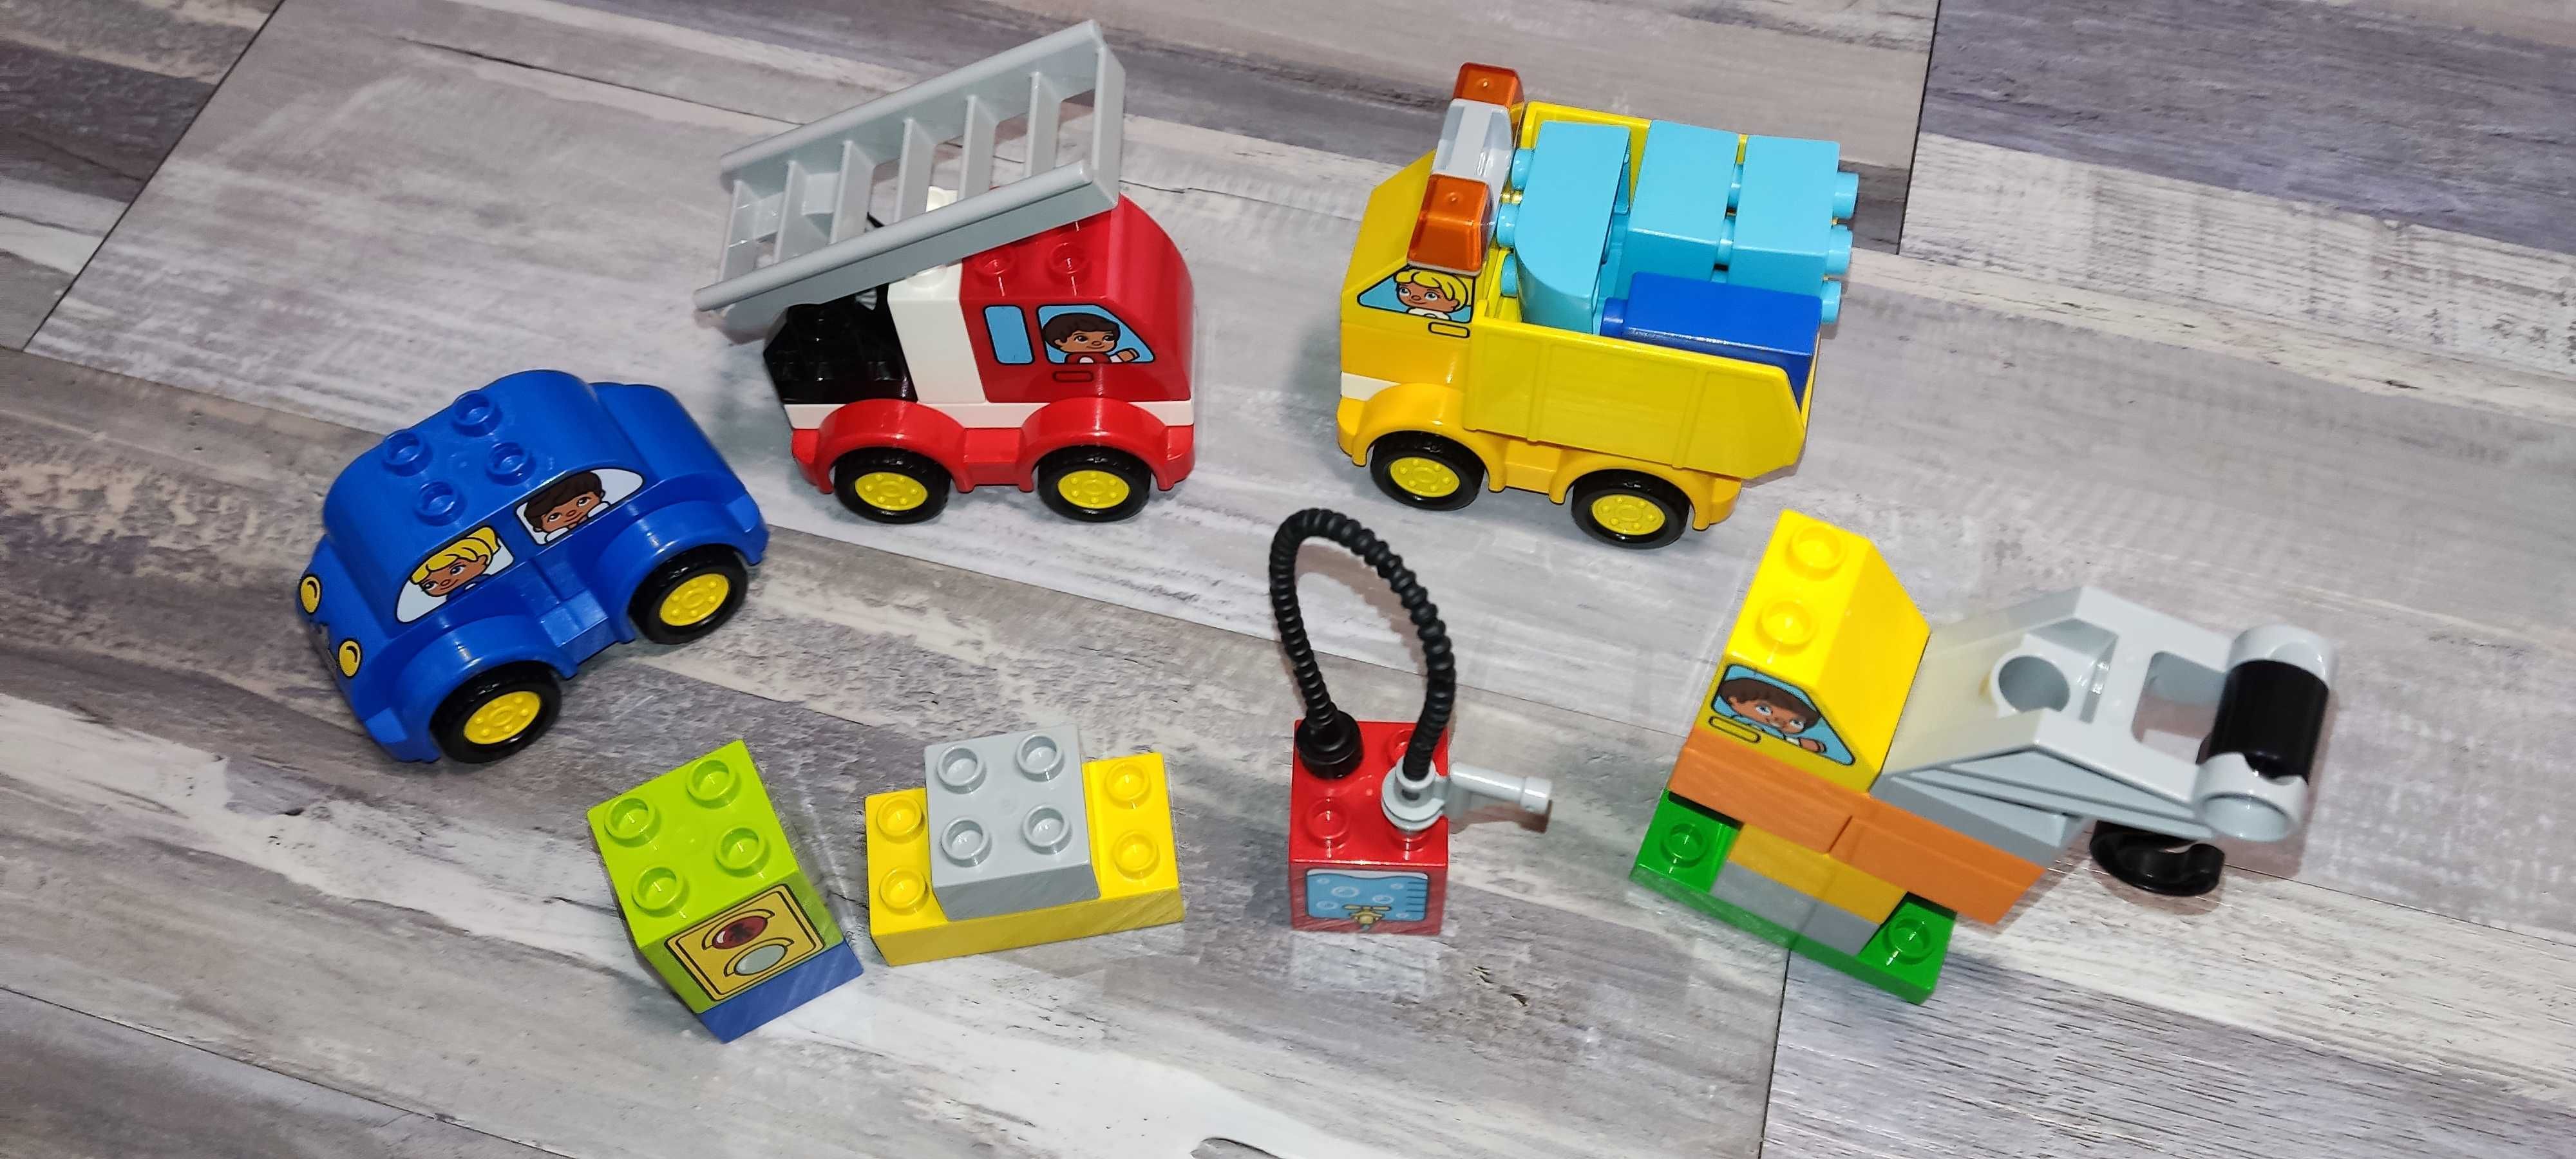 Lego Duplo 10816 Moje pierwsze pojazdy